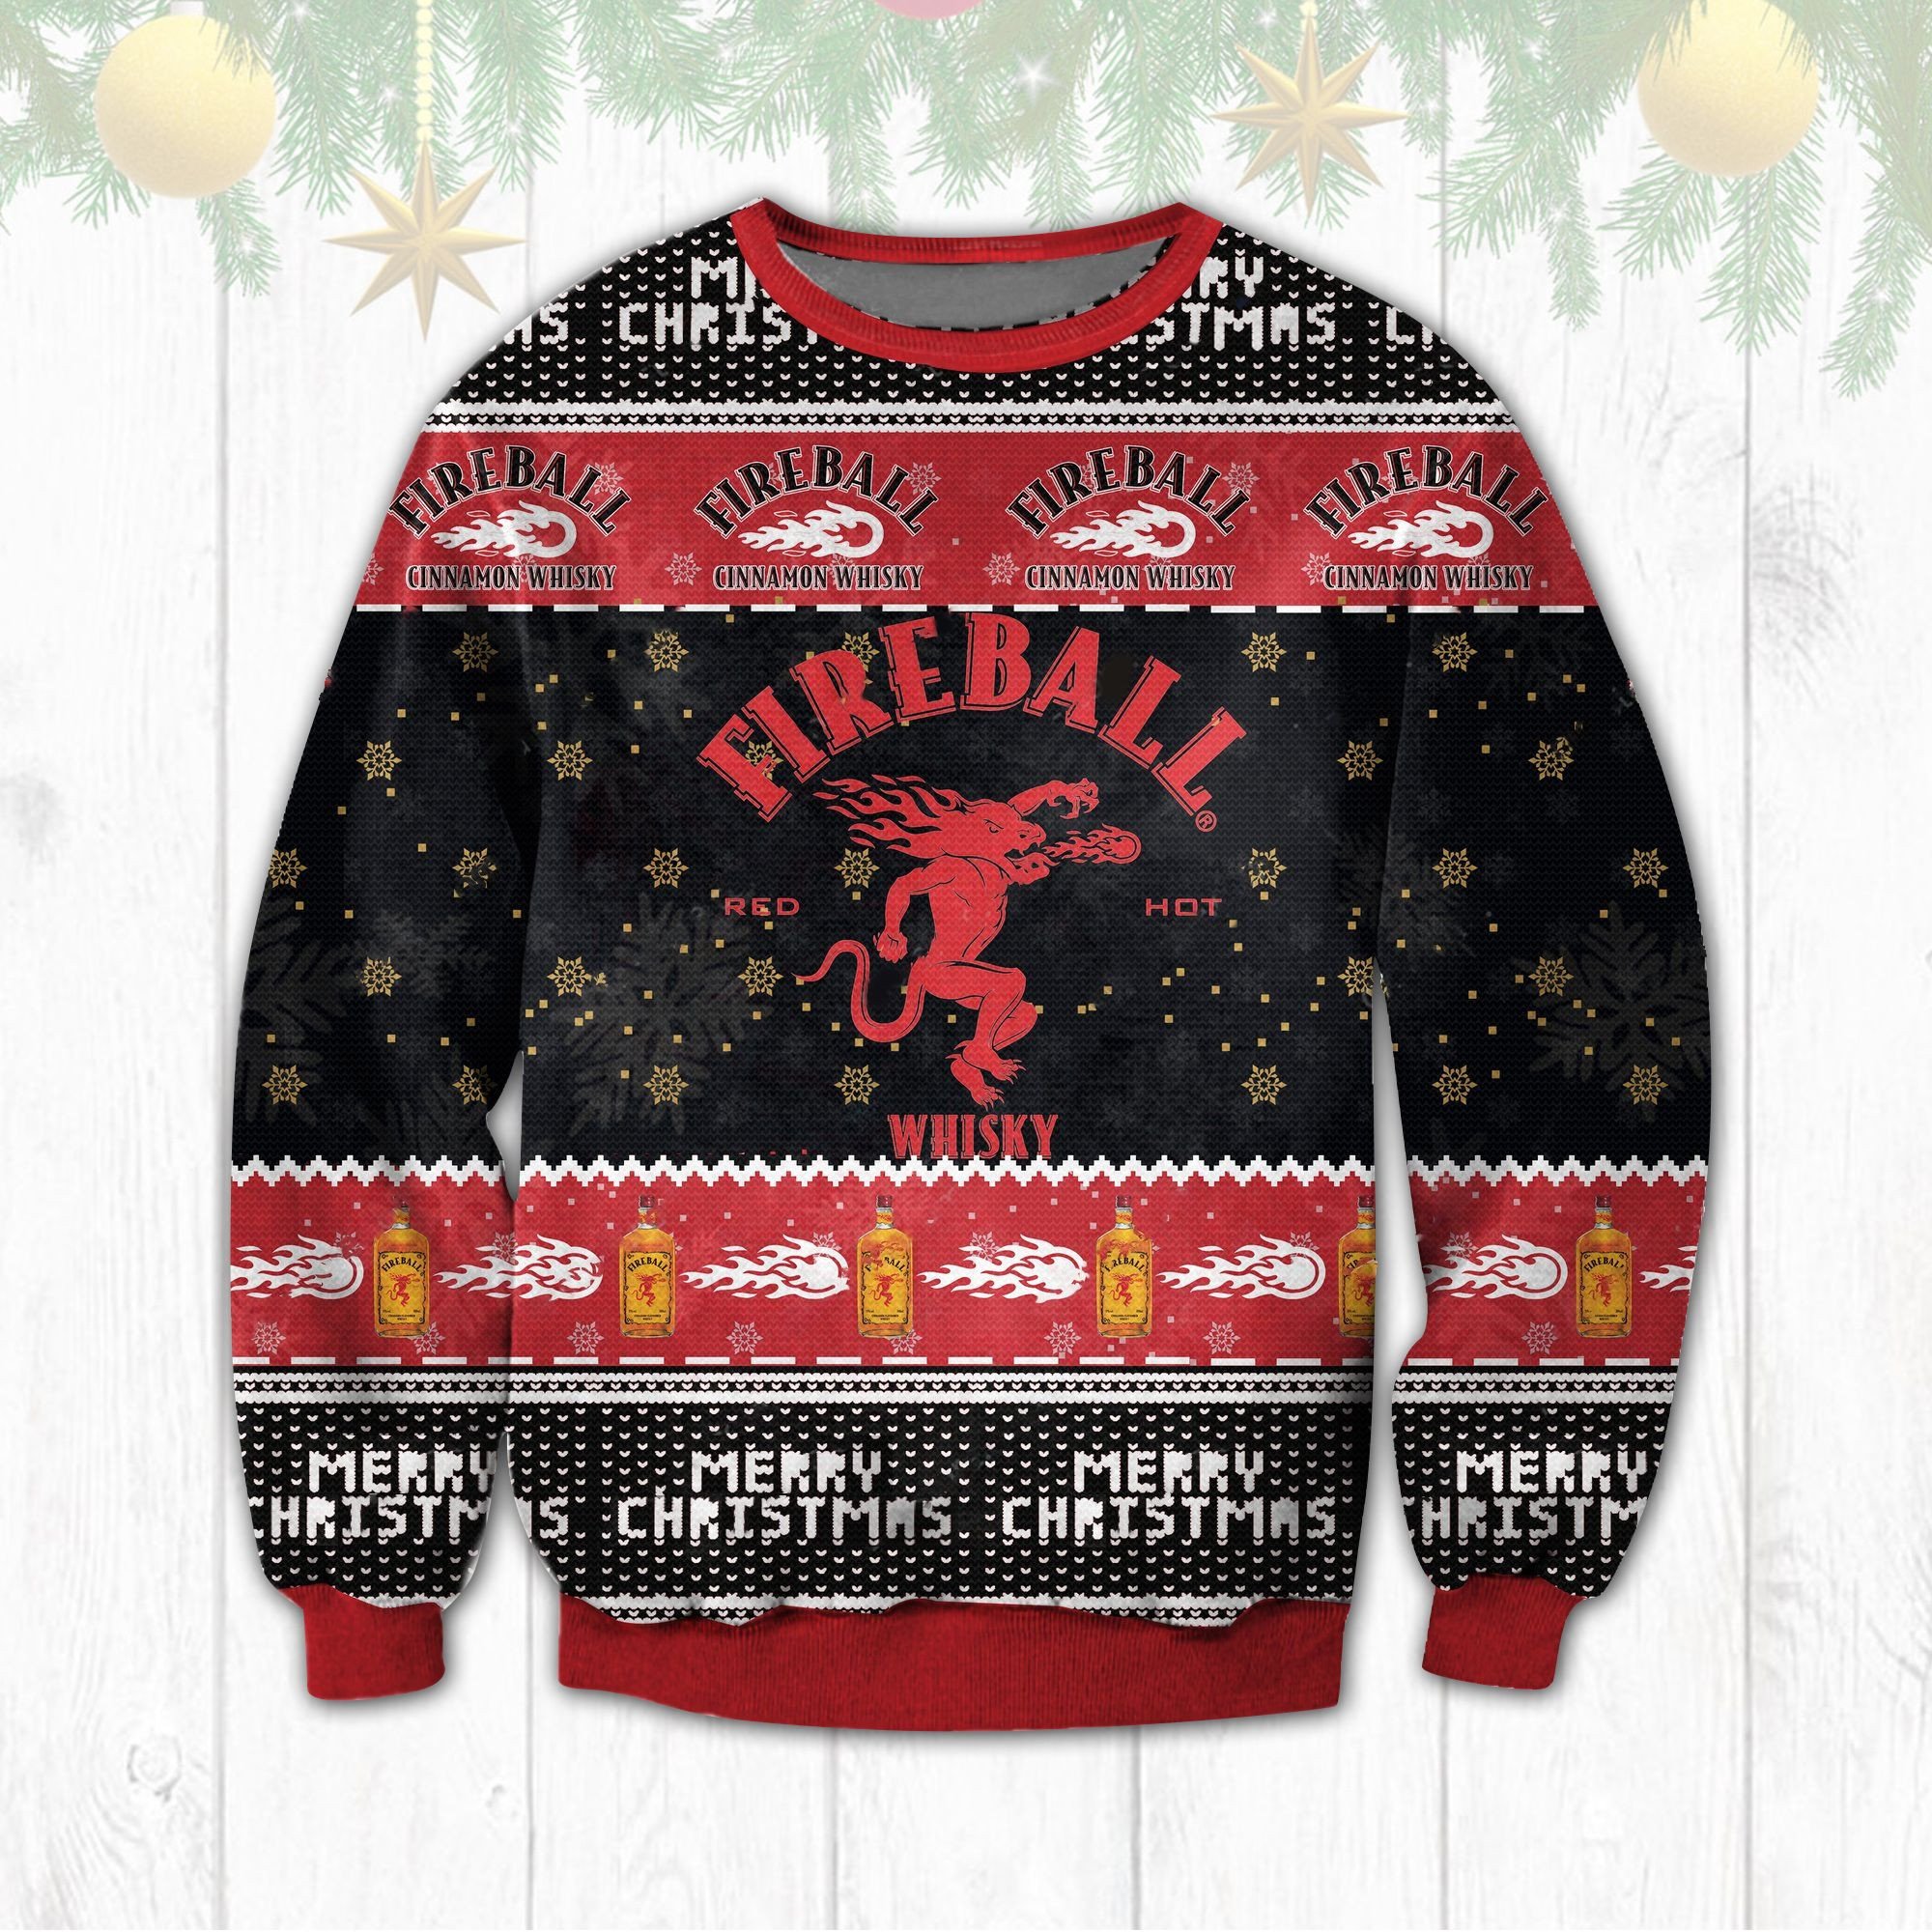 HOT Fireball Cinnamon Whisky Ugly Christmas Sweater 1